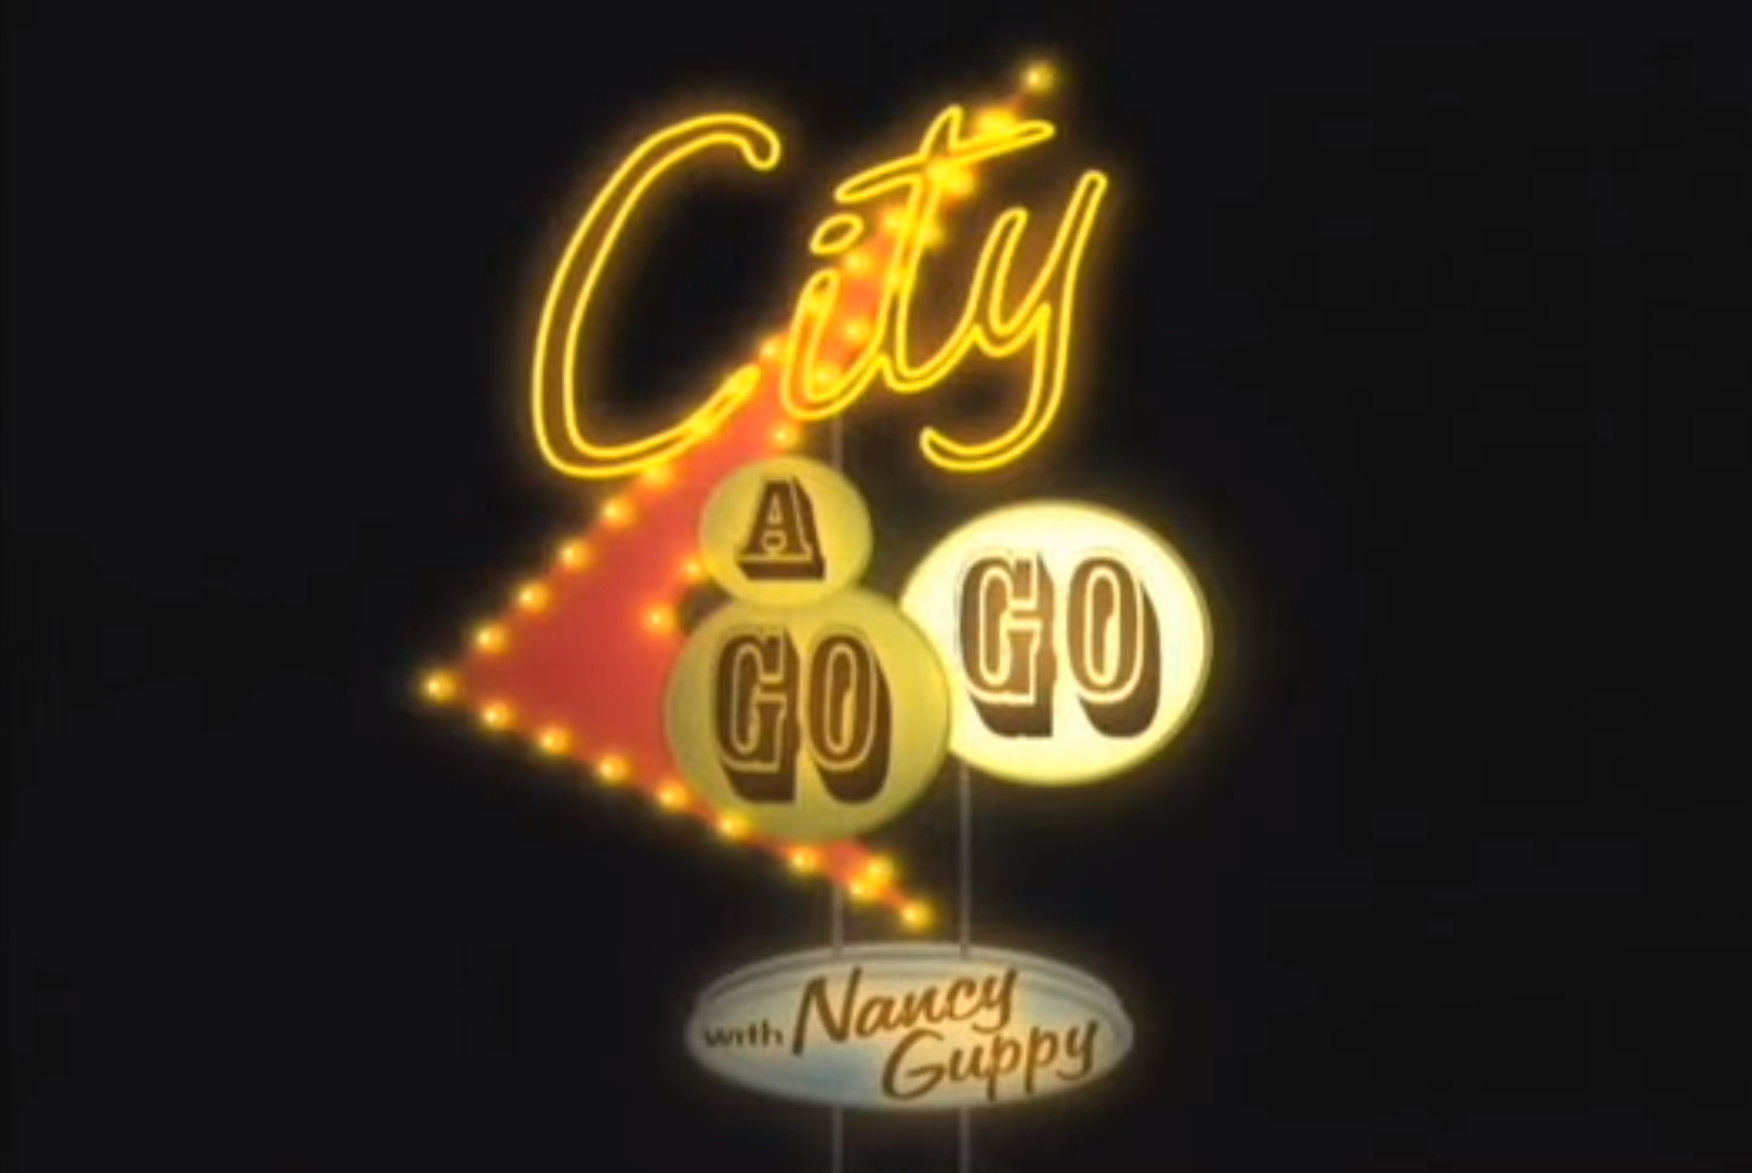 City Go Go logo